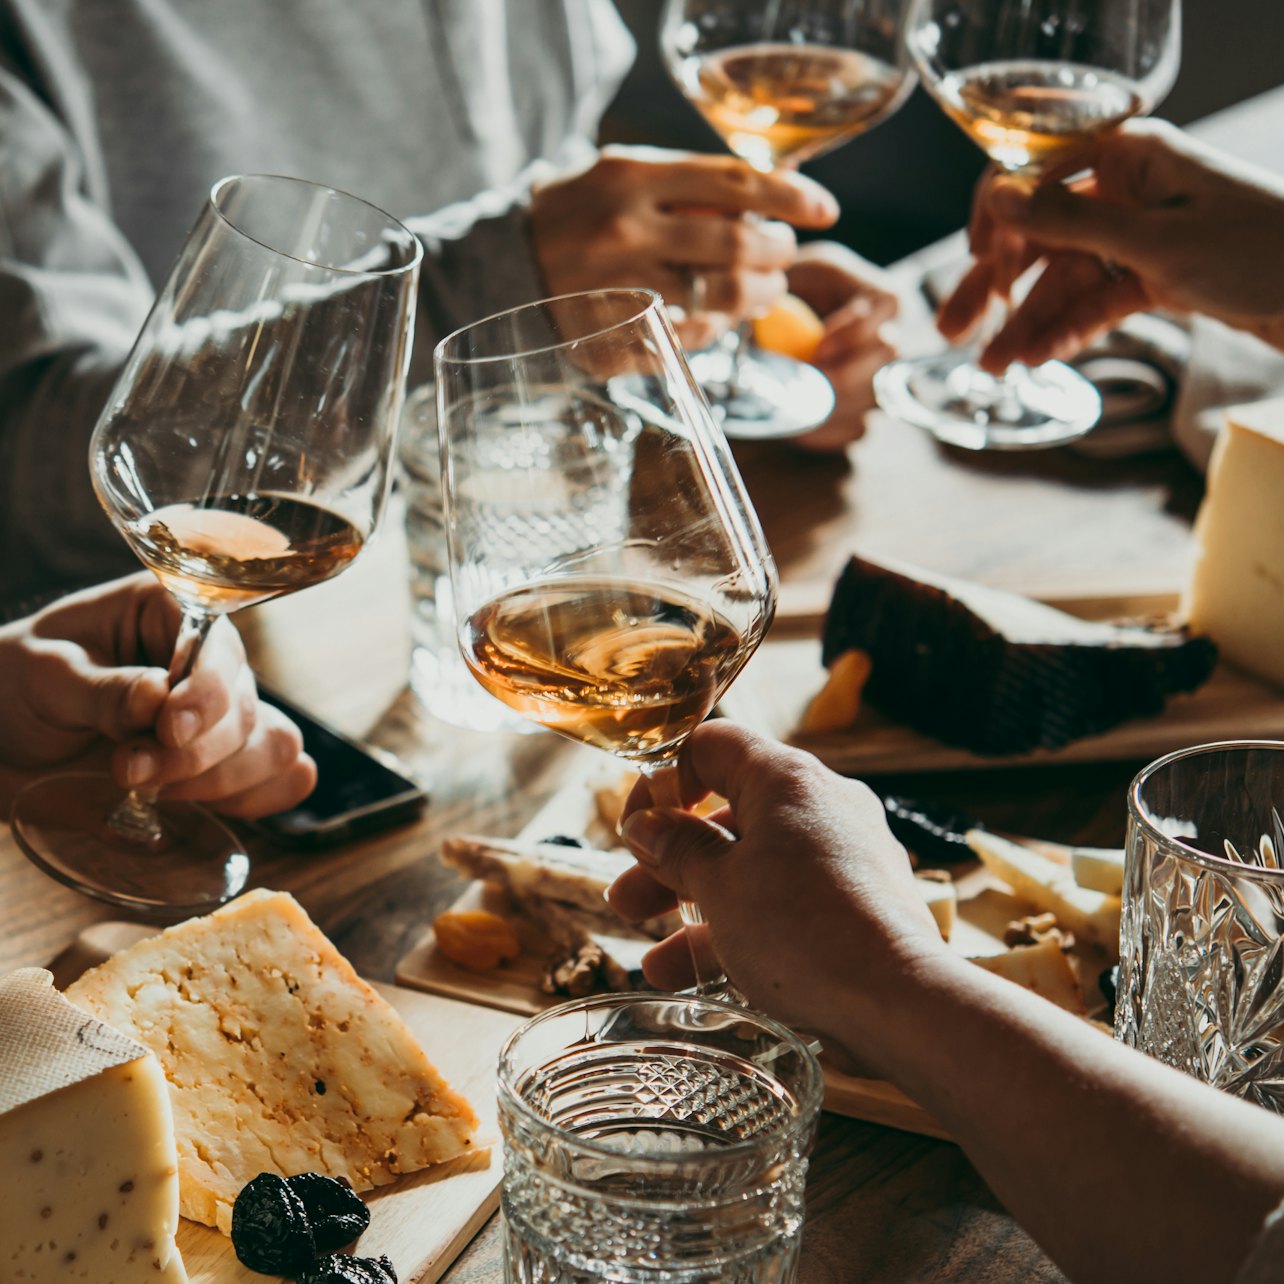 Burdeos: Cata de vinos y quesos en una auténtica bodega - Alojamientos en Burdeos